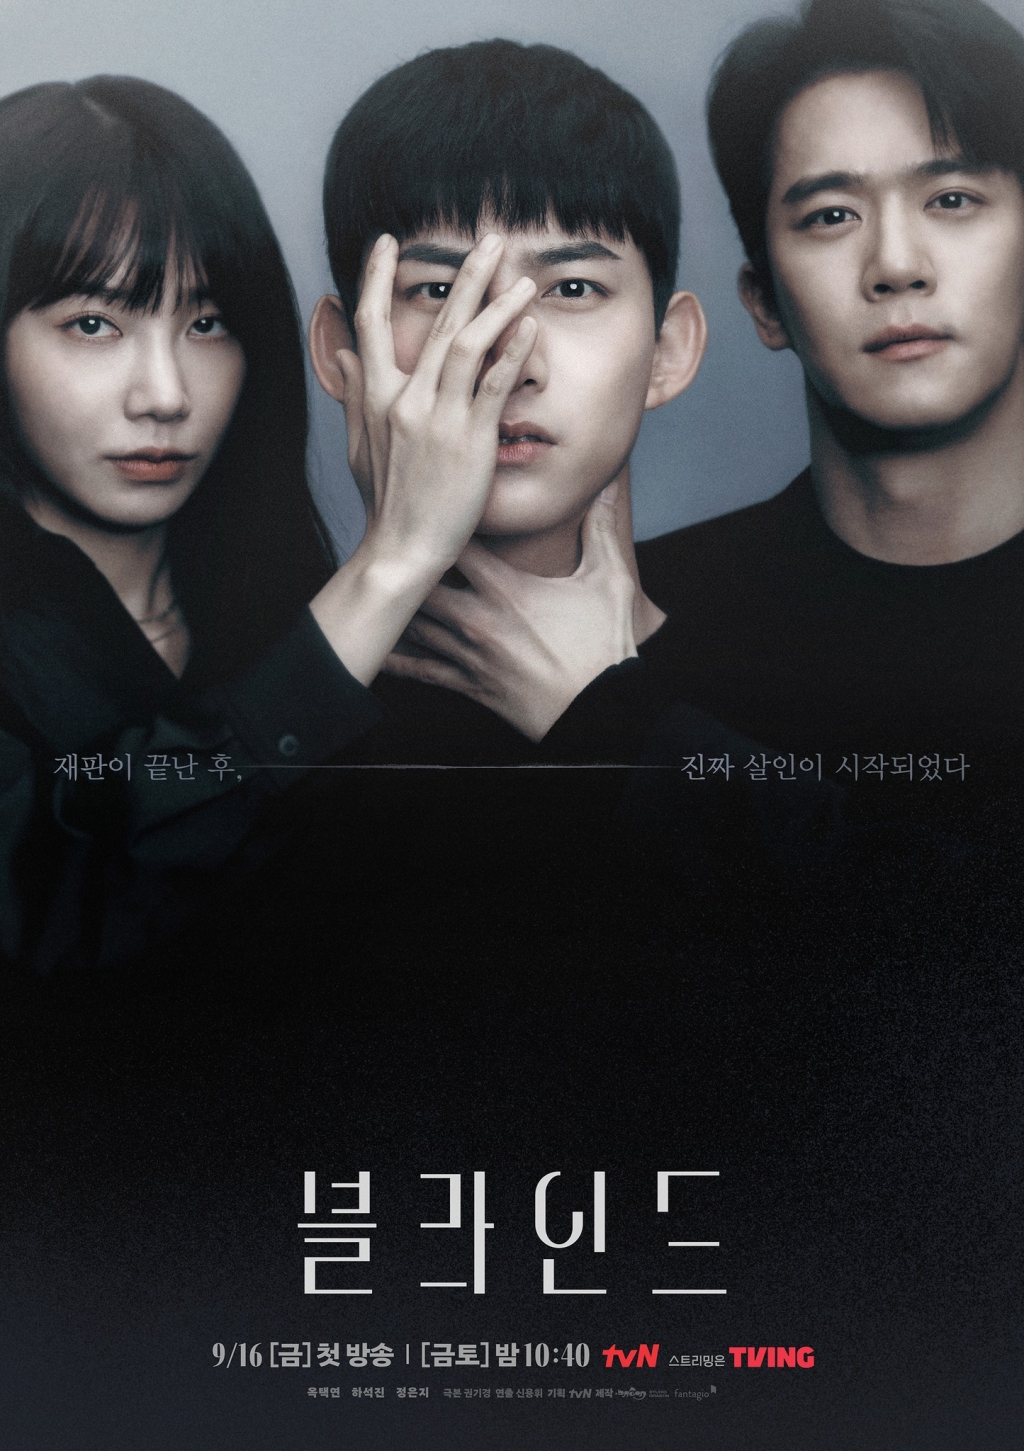 Phim Hàn tháng 9: Park Min Young liệu đã hết thời, chờ đón sự kết hợp của Jung Eun Ji và Taecyeon?